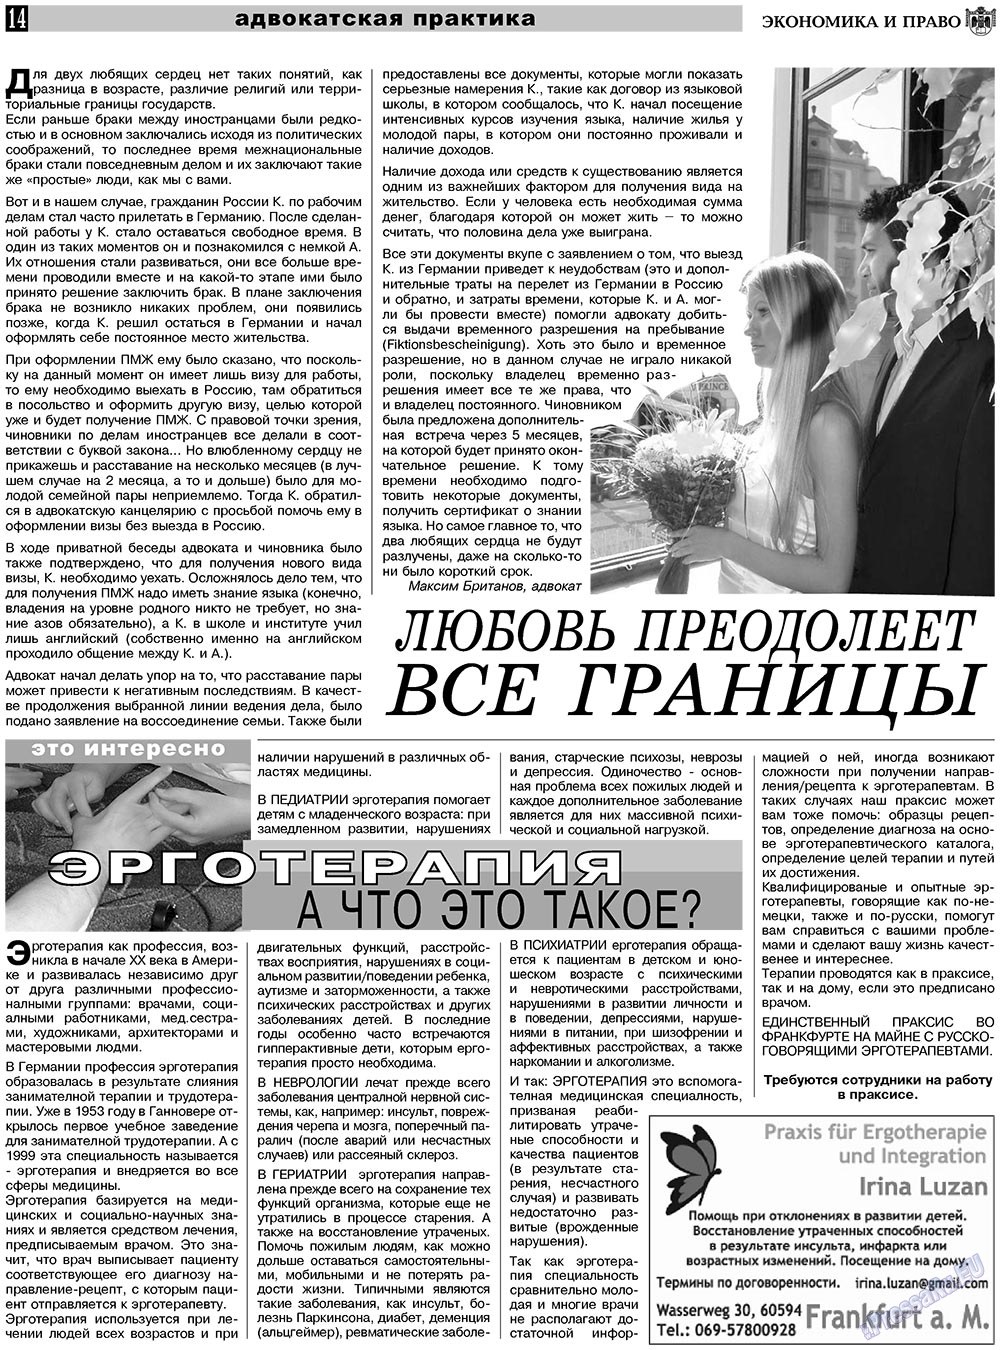 Экономика и право, газета. 2010 №11 стр.14